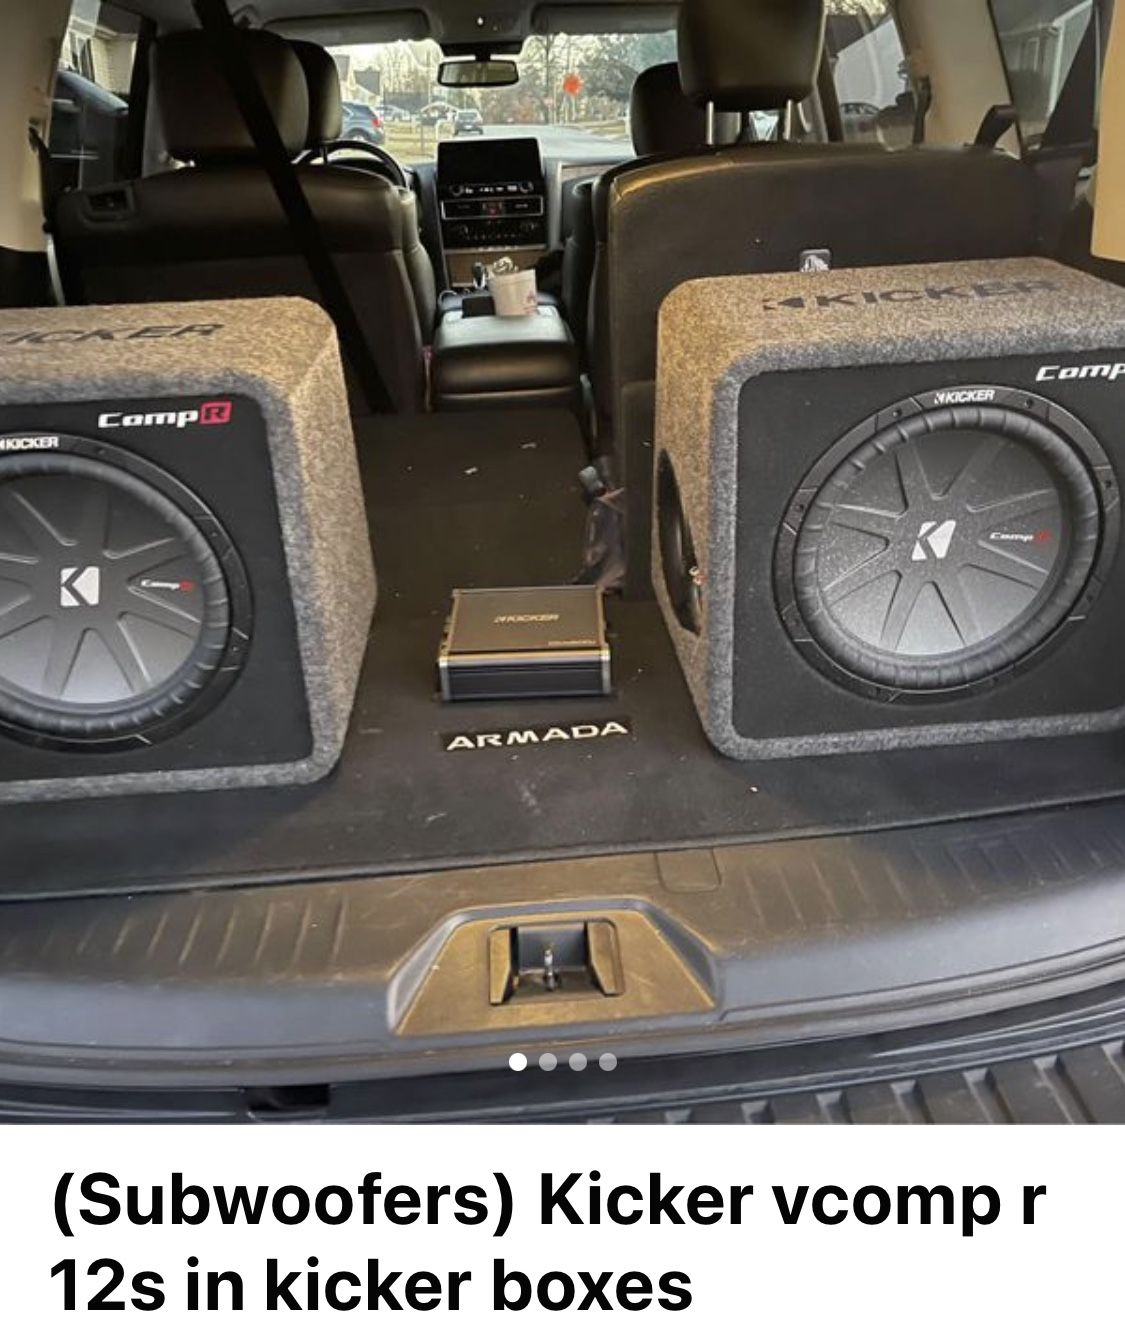 2 Kicker Comp Vr 12 Inch In Single Kicker Branded Boxes